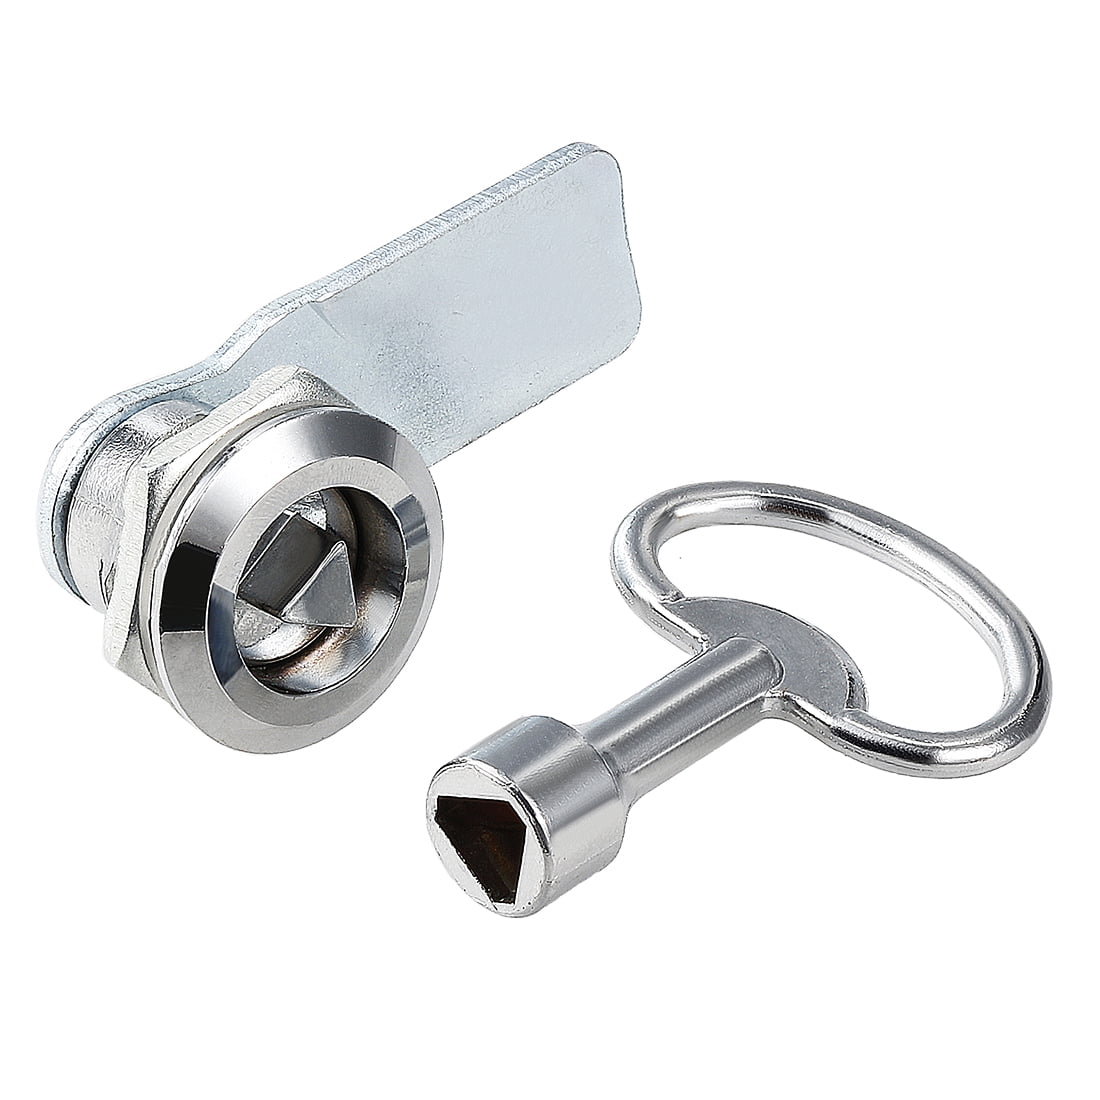 23mmx19mm Cylinder Zinc Alloy Chrome Finish Plunger Cabinets Lock Keyed Alike